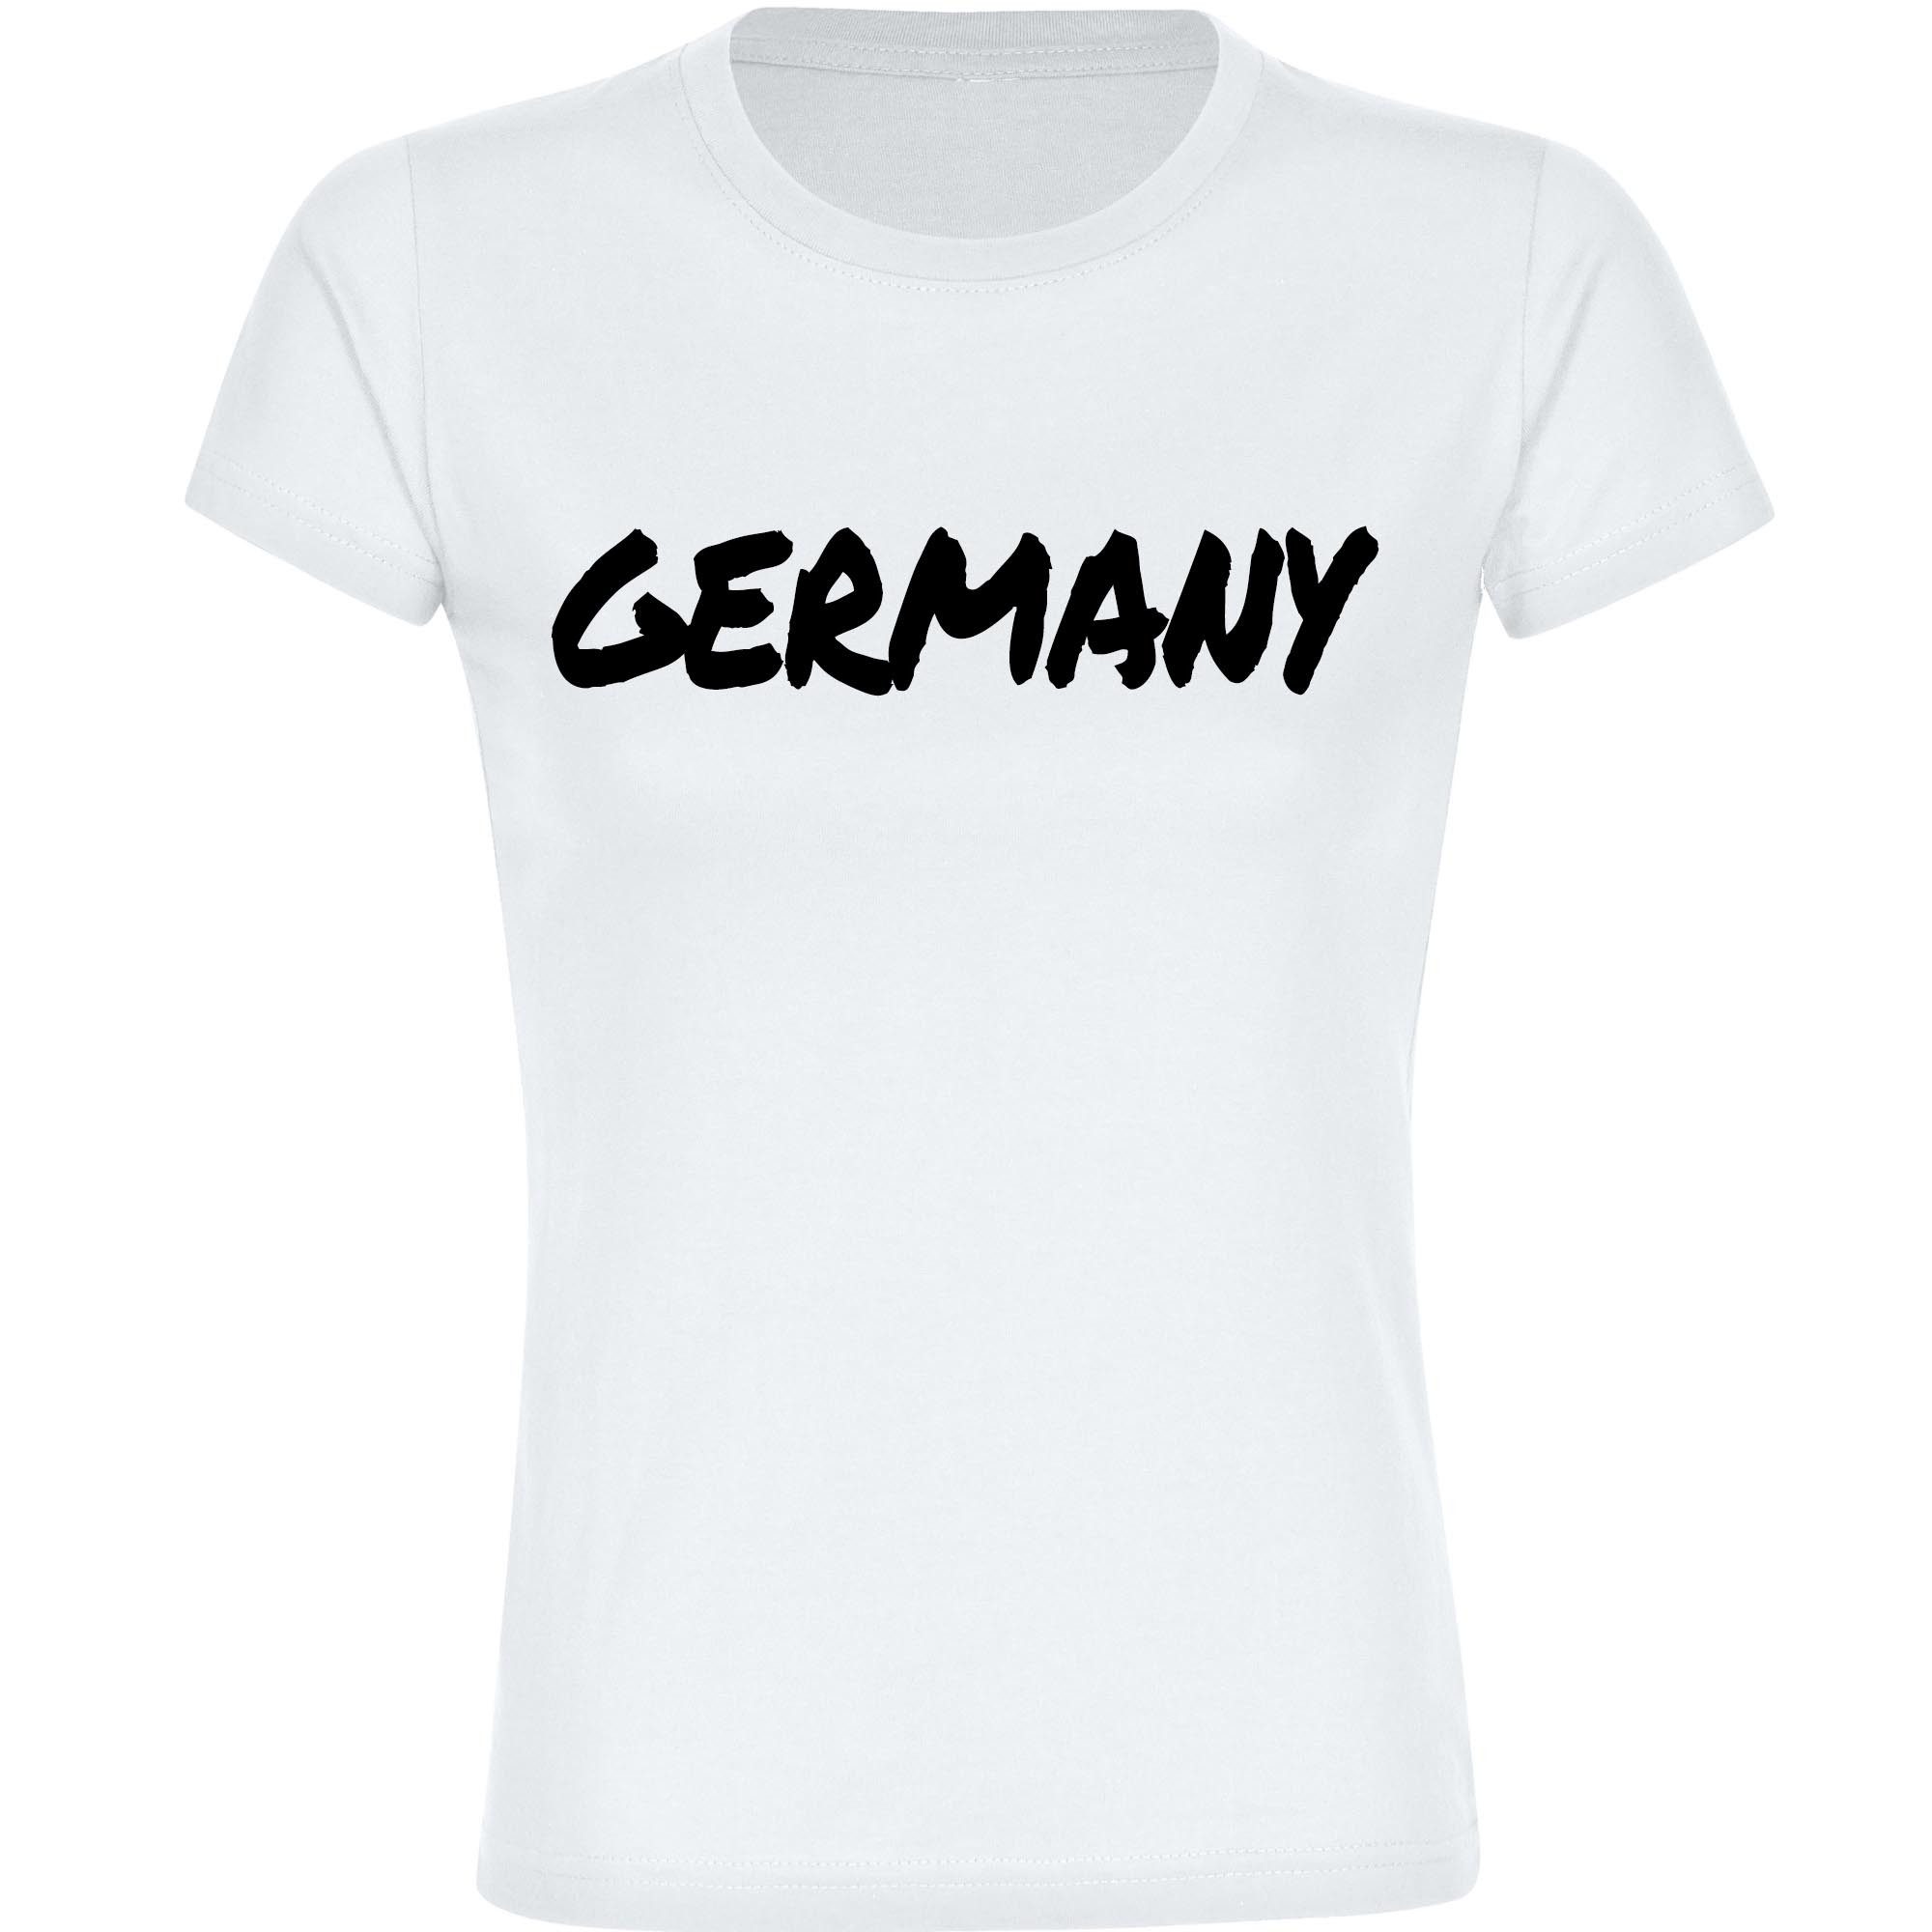 multifanshop T-Shirt Damen Germany - Textmarker - Frauen